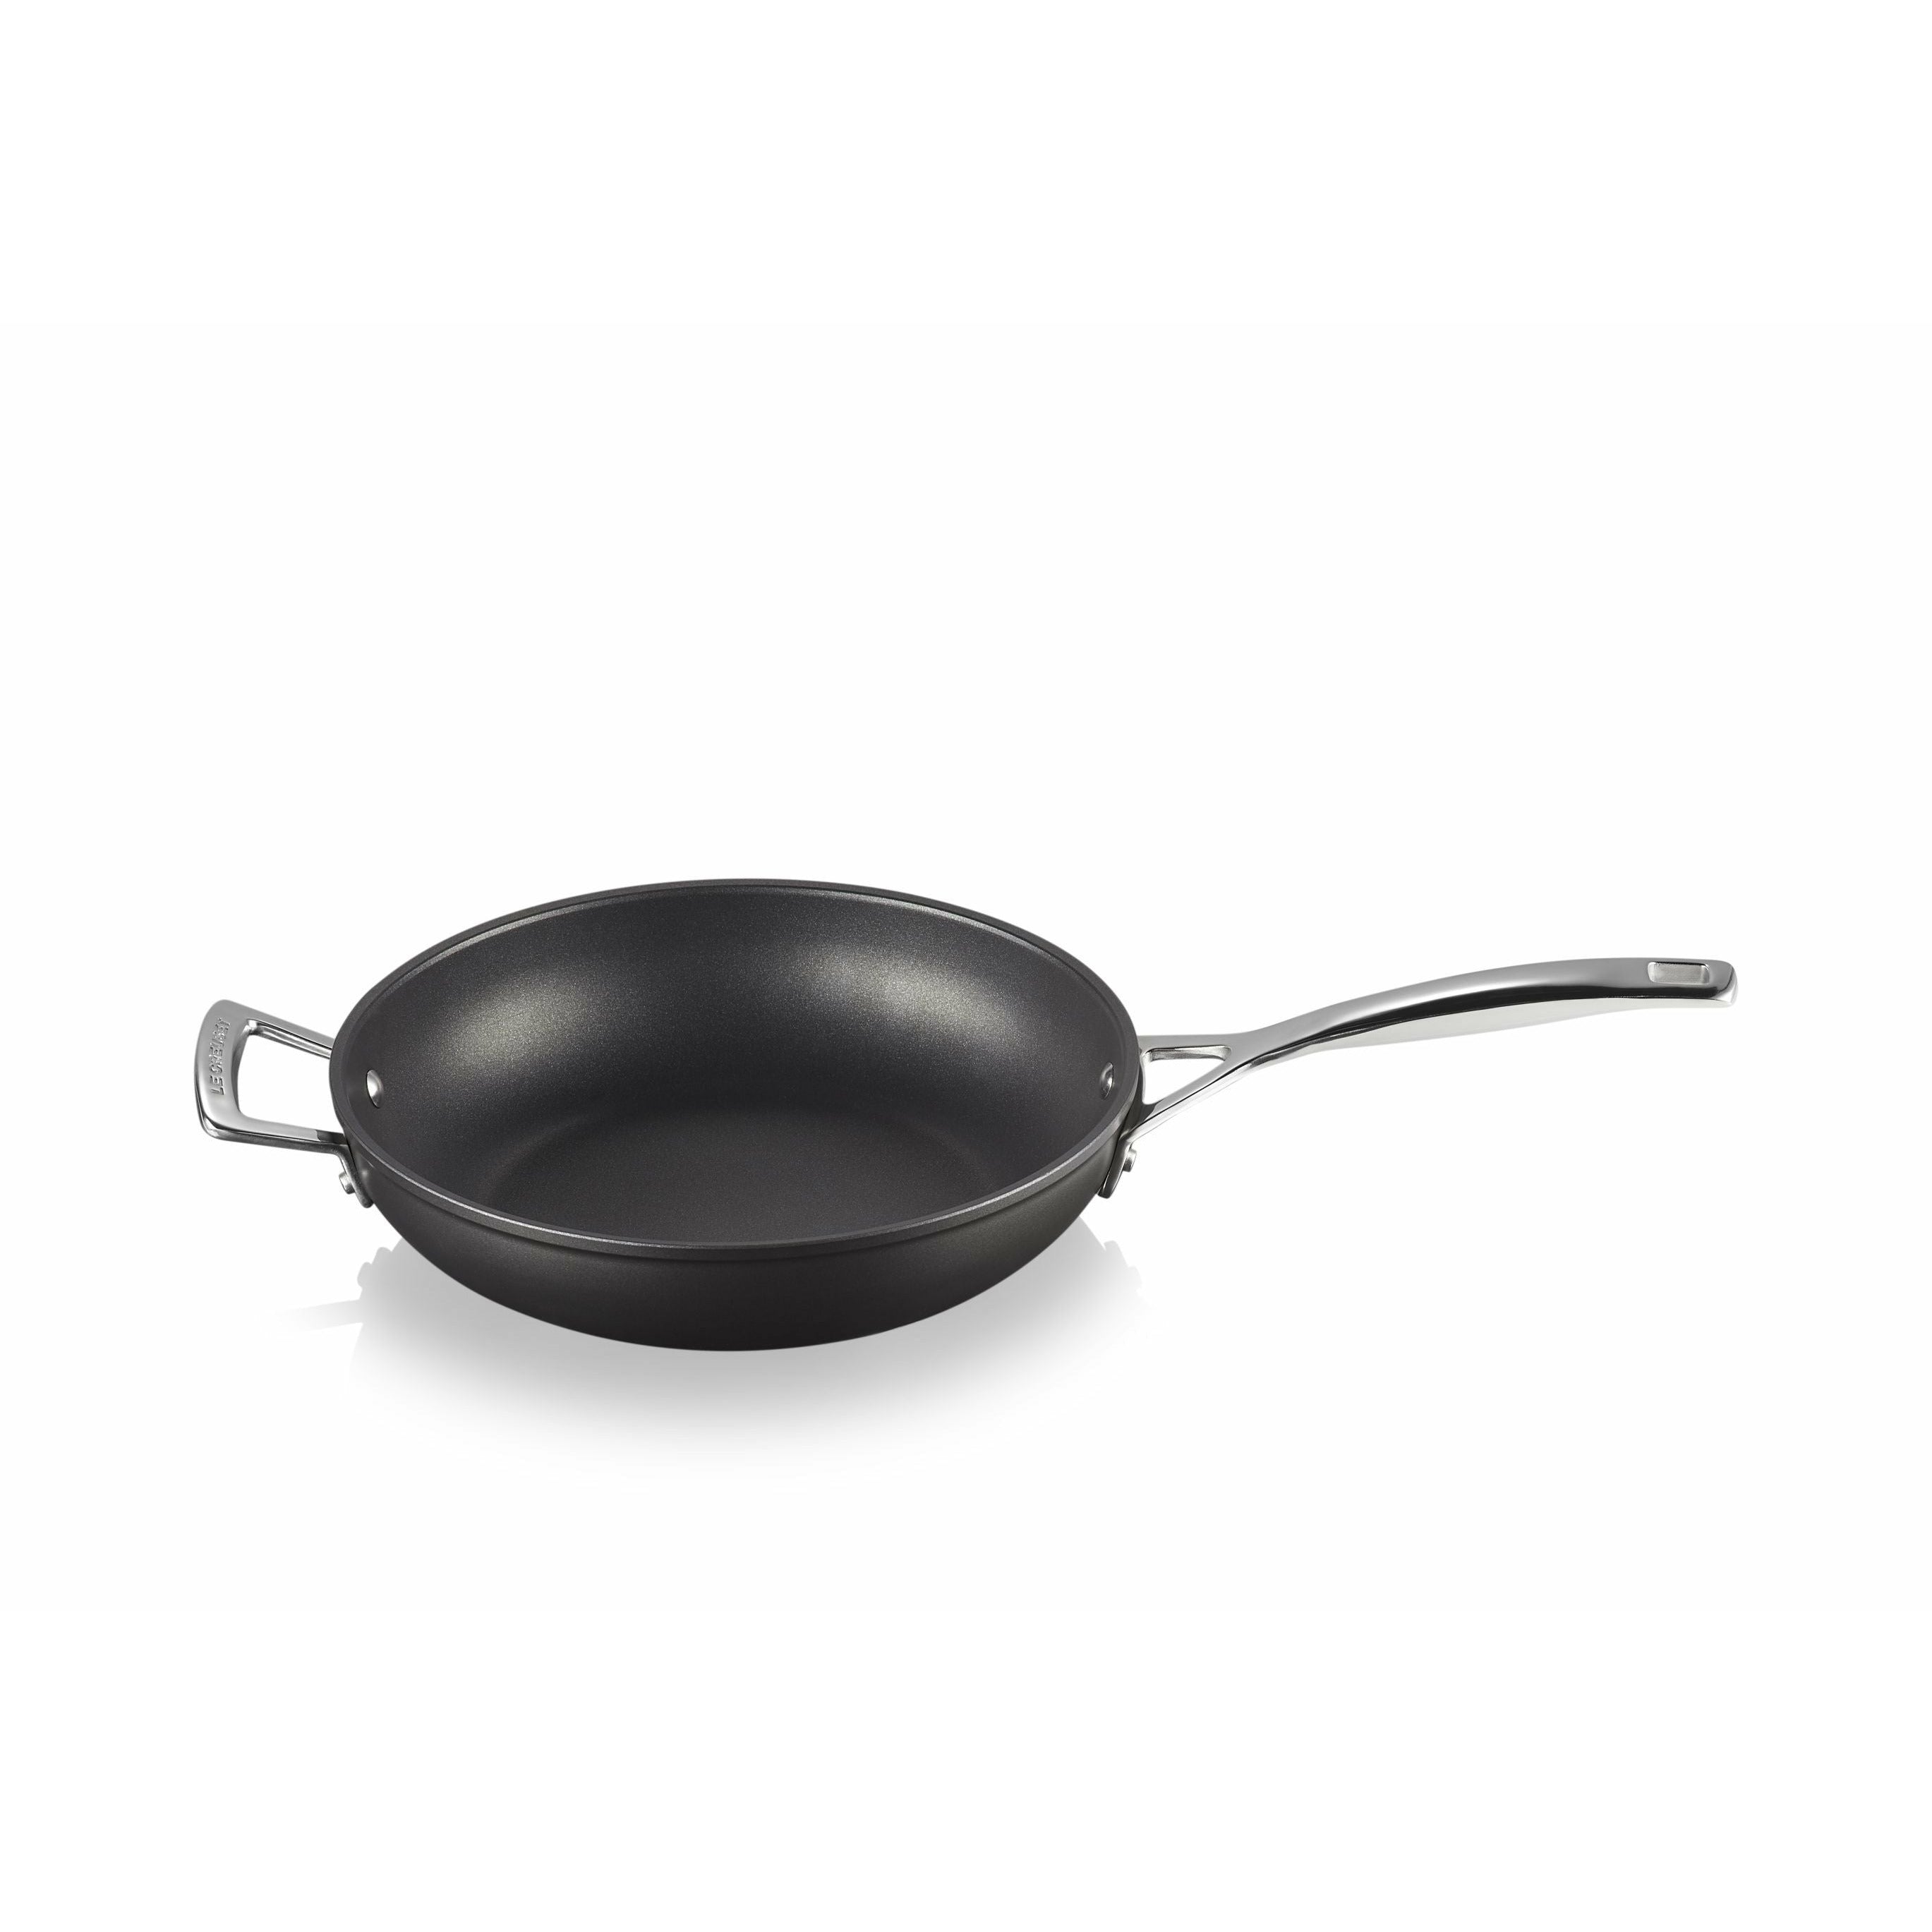 Le Creuset Aluminium Non Stick High Pan With Counter Handle, 26 Cm